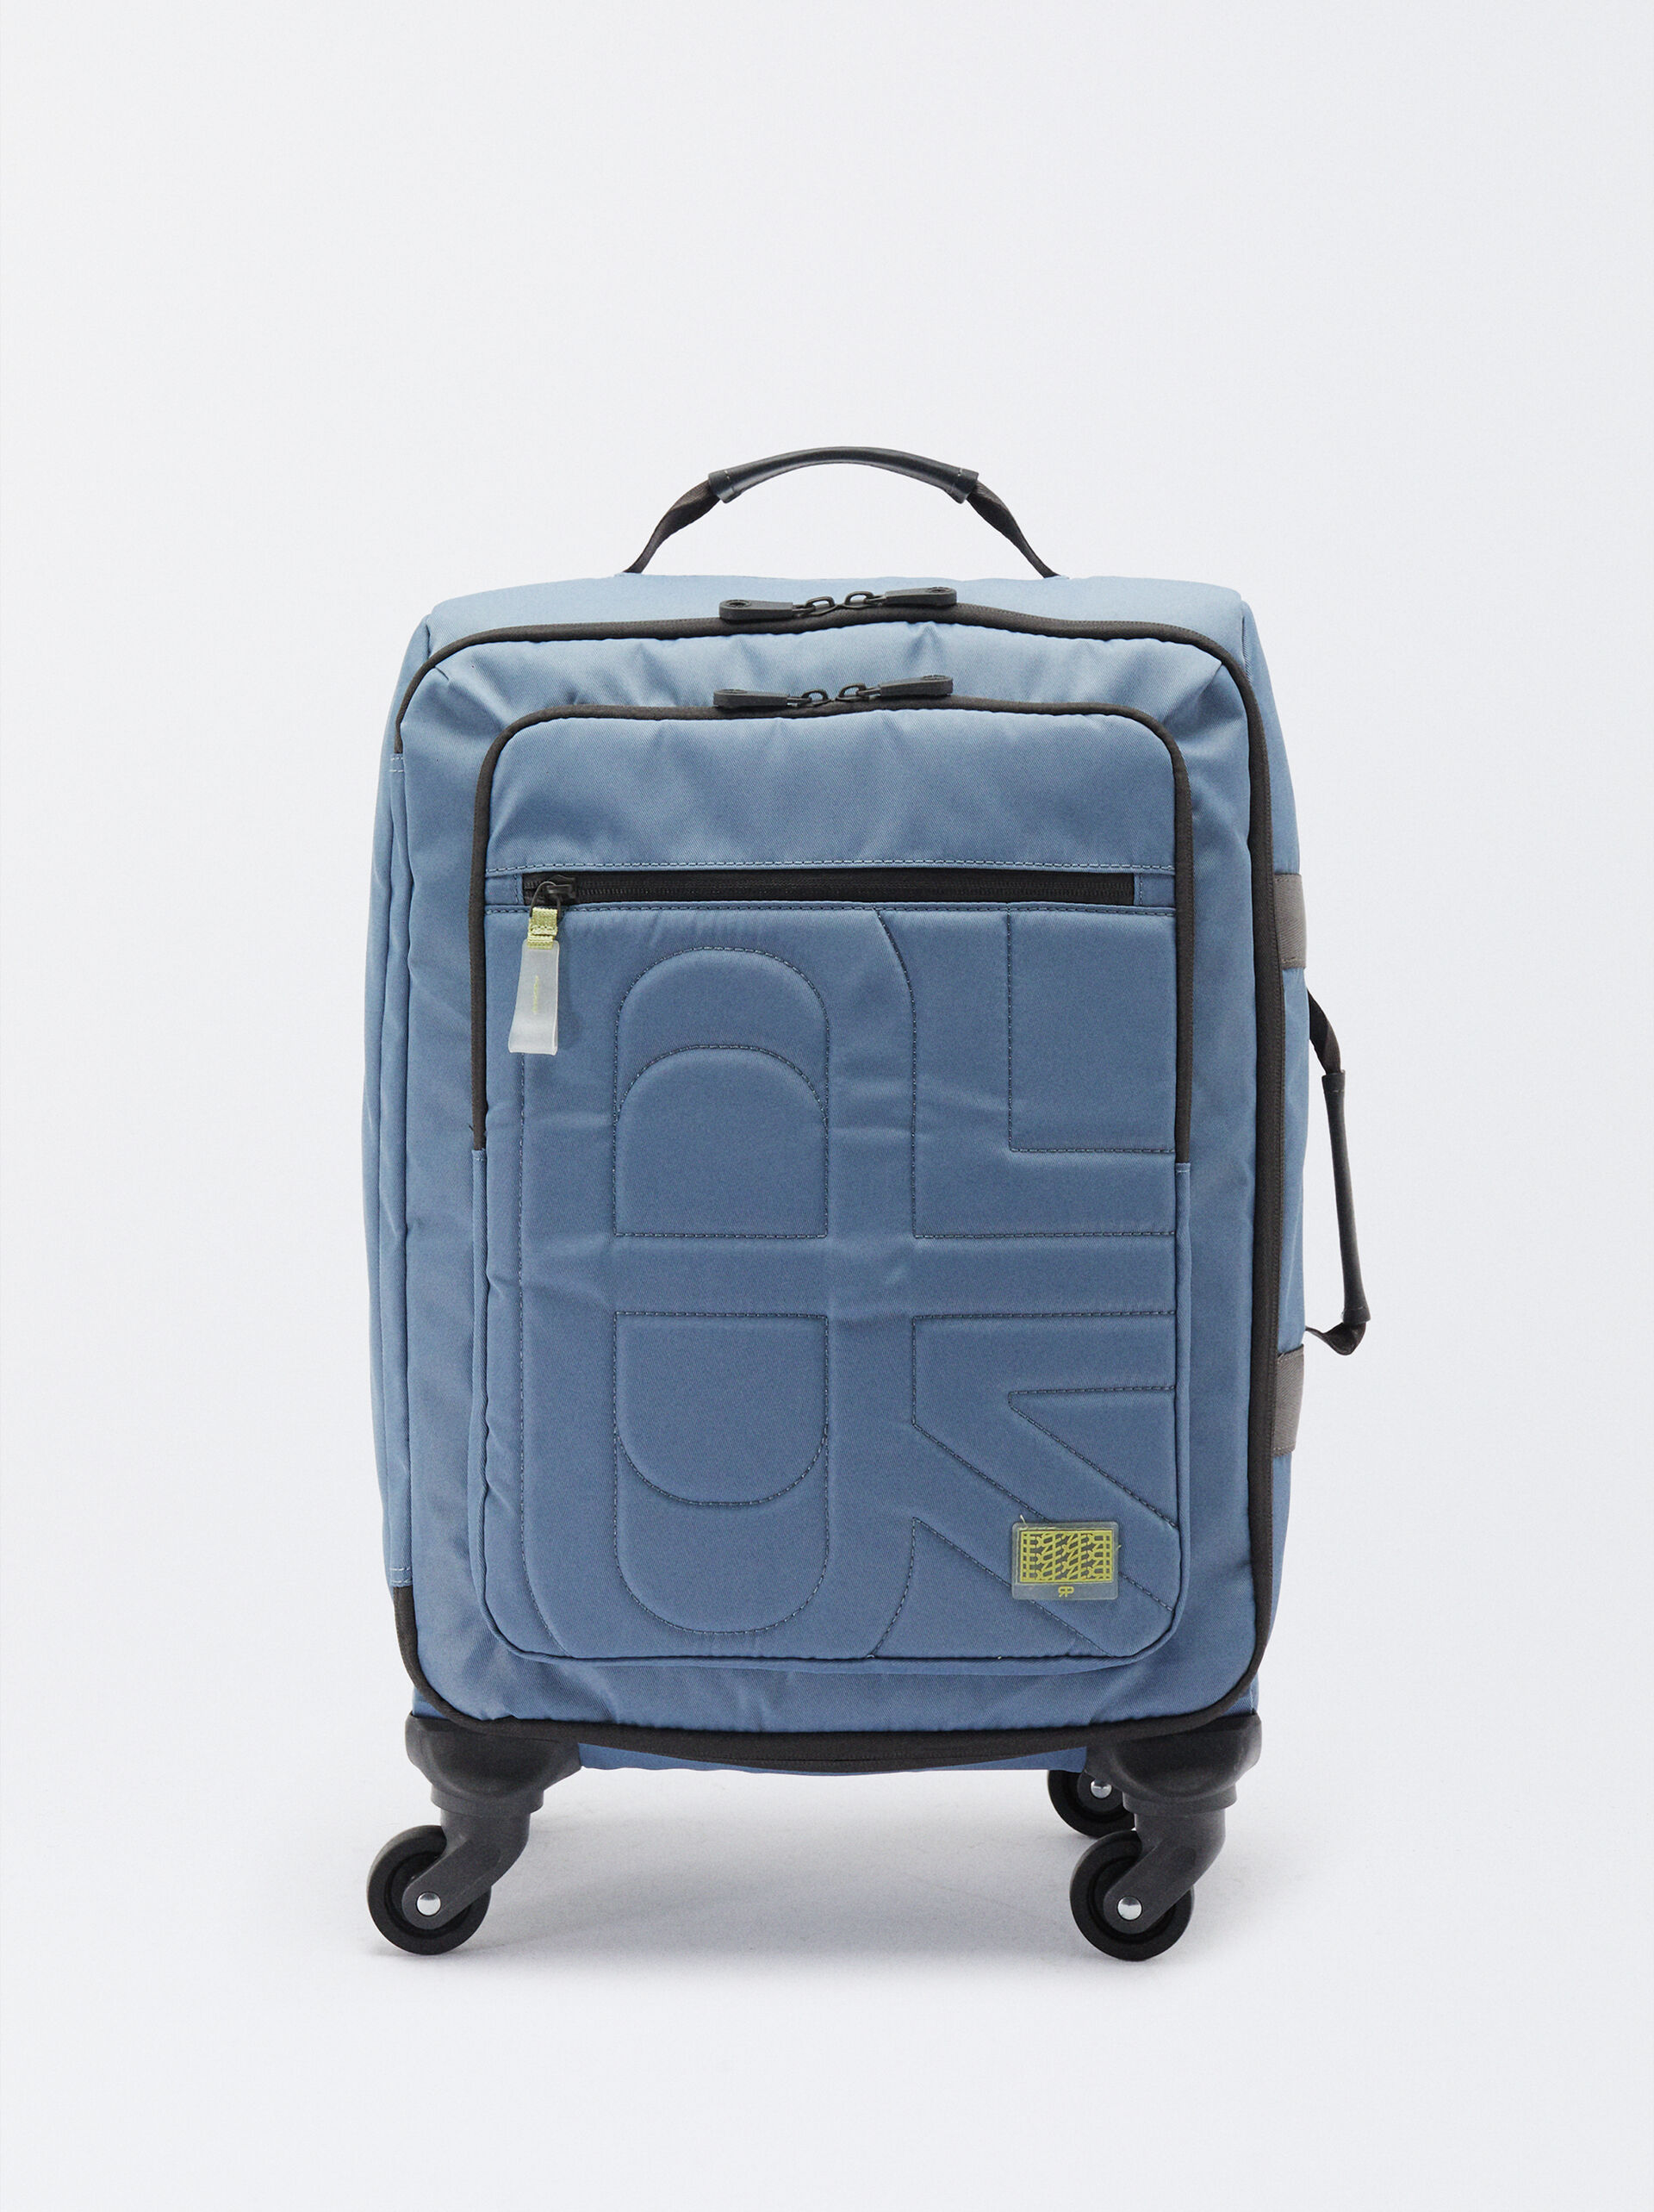 Nylon Suitcase image number 0.0